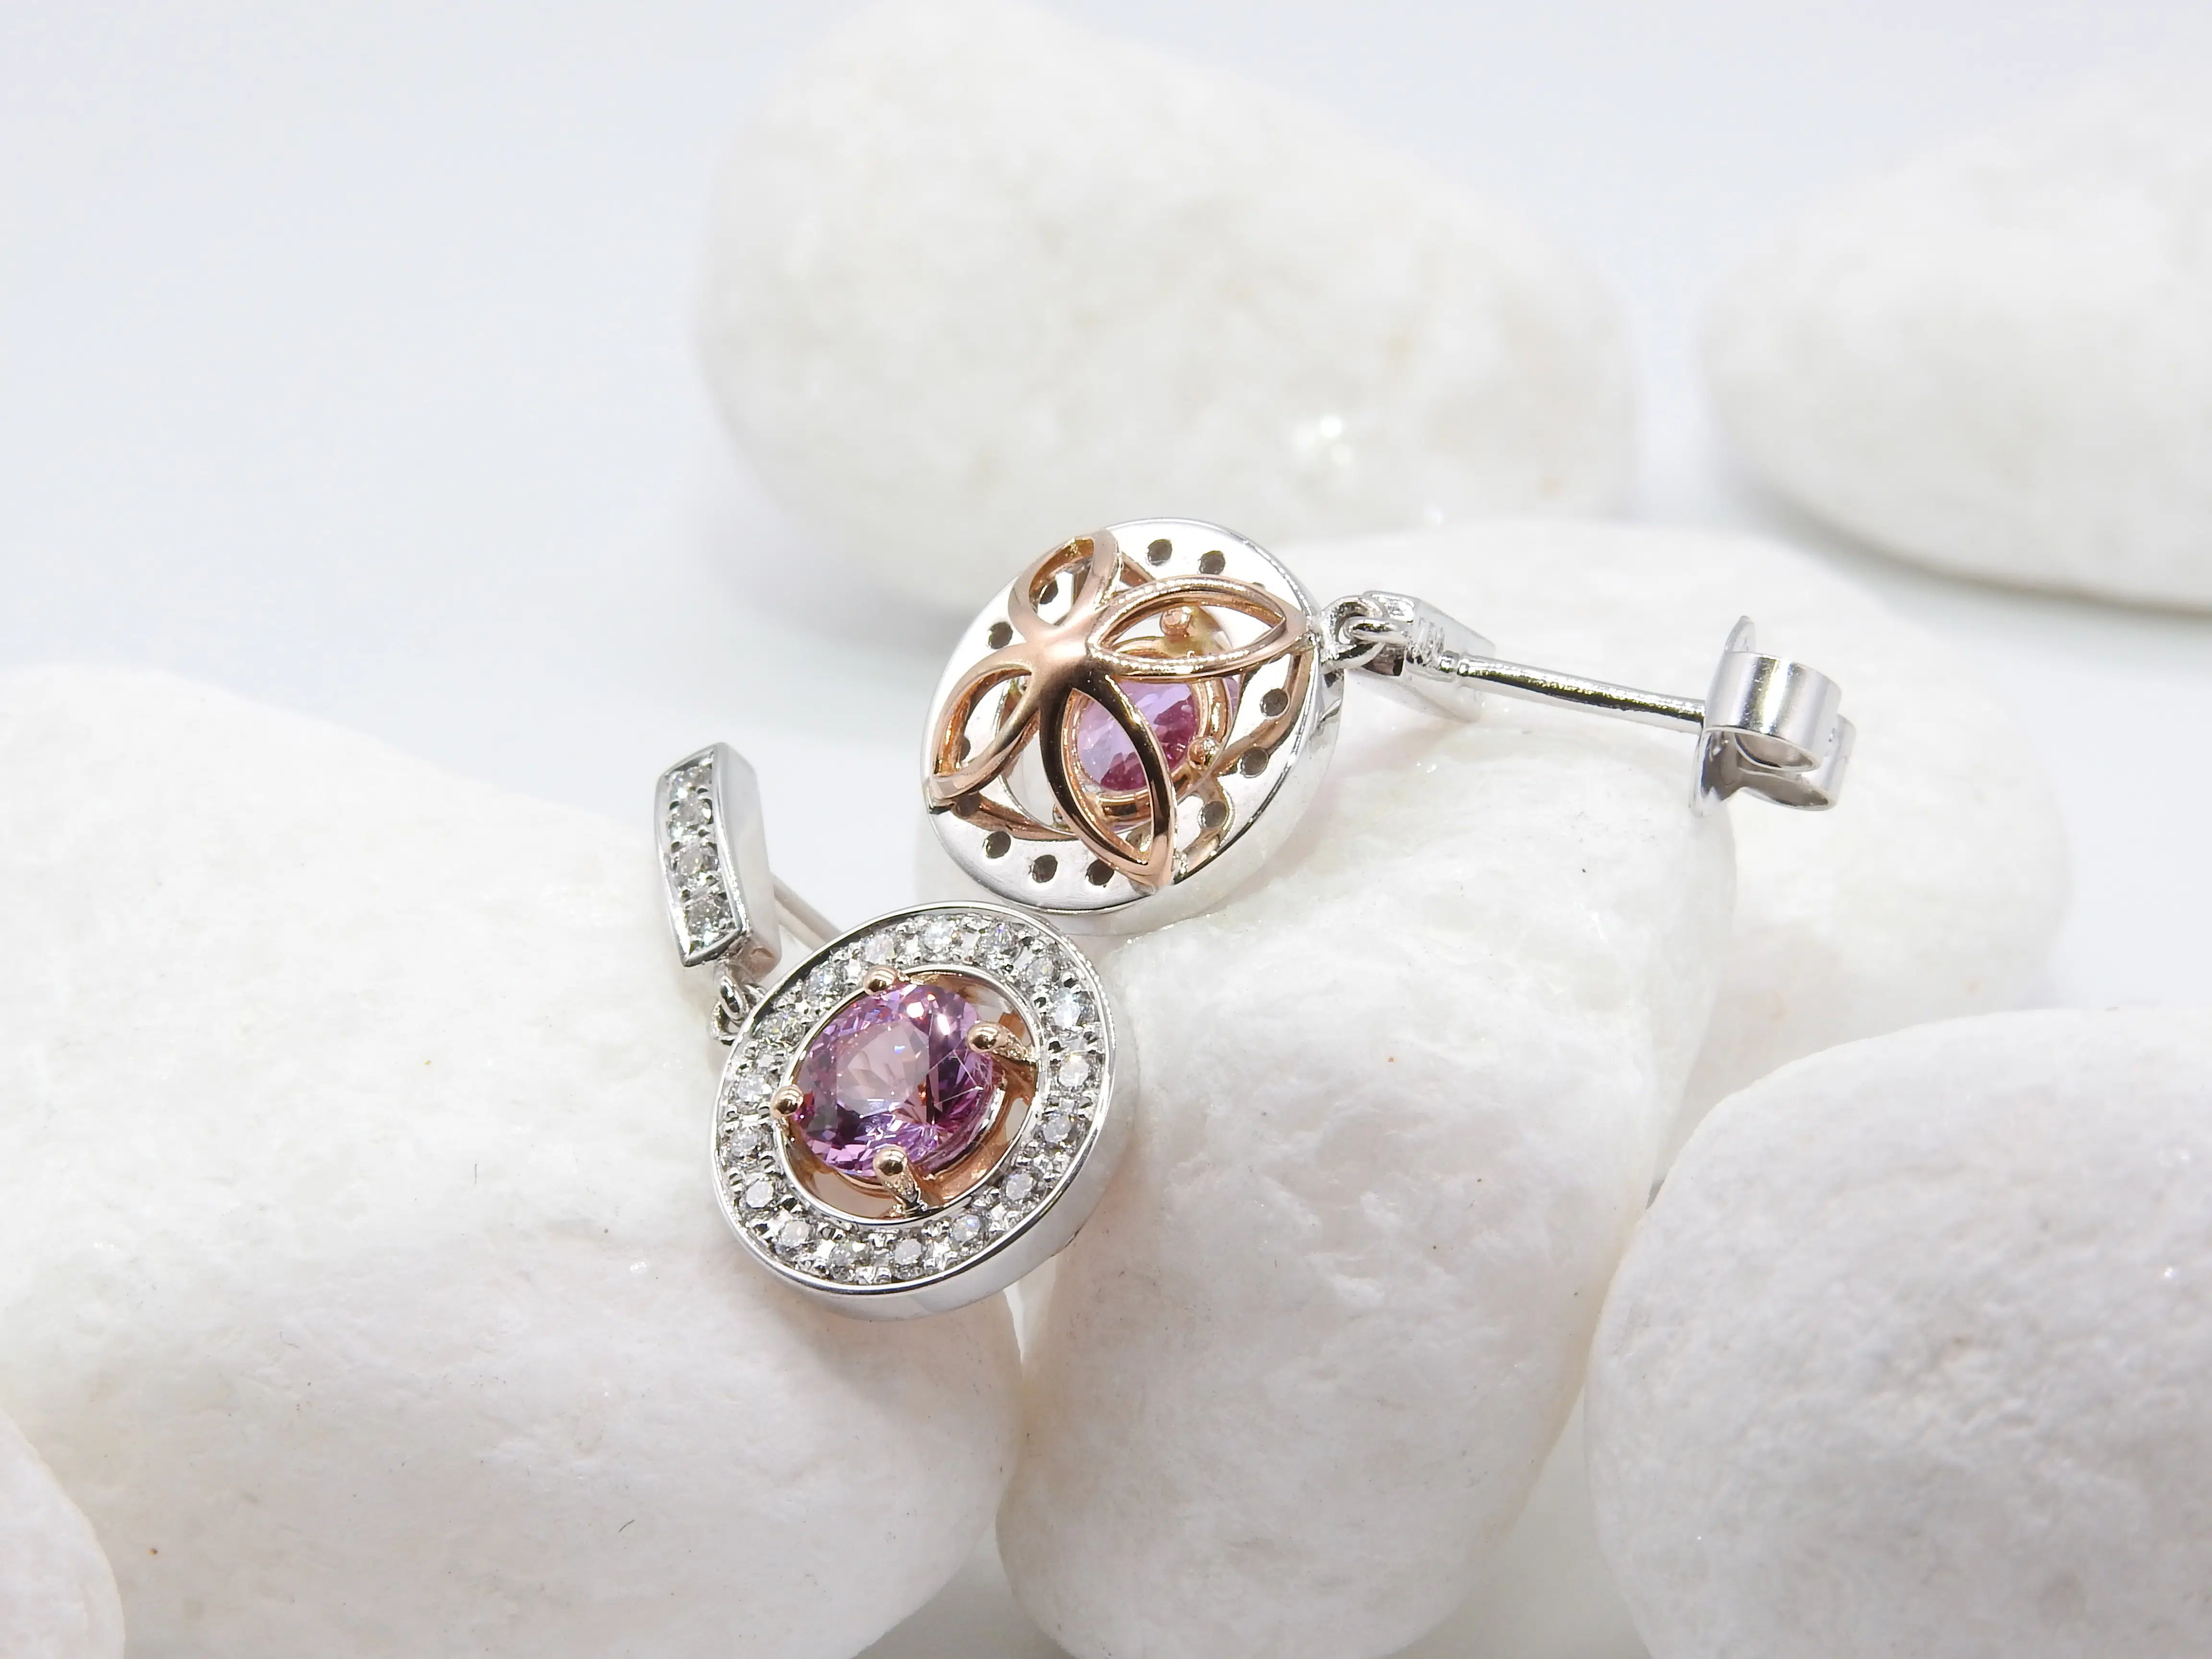 Boucles d'oreilles bicolores or rose et blanc 750, saphirs rose et diamants blanc